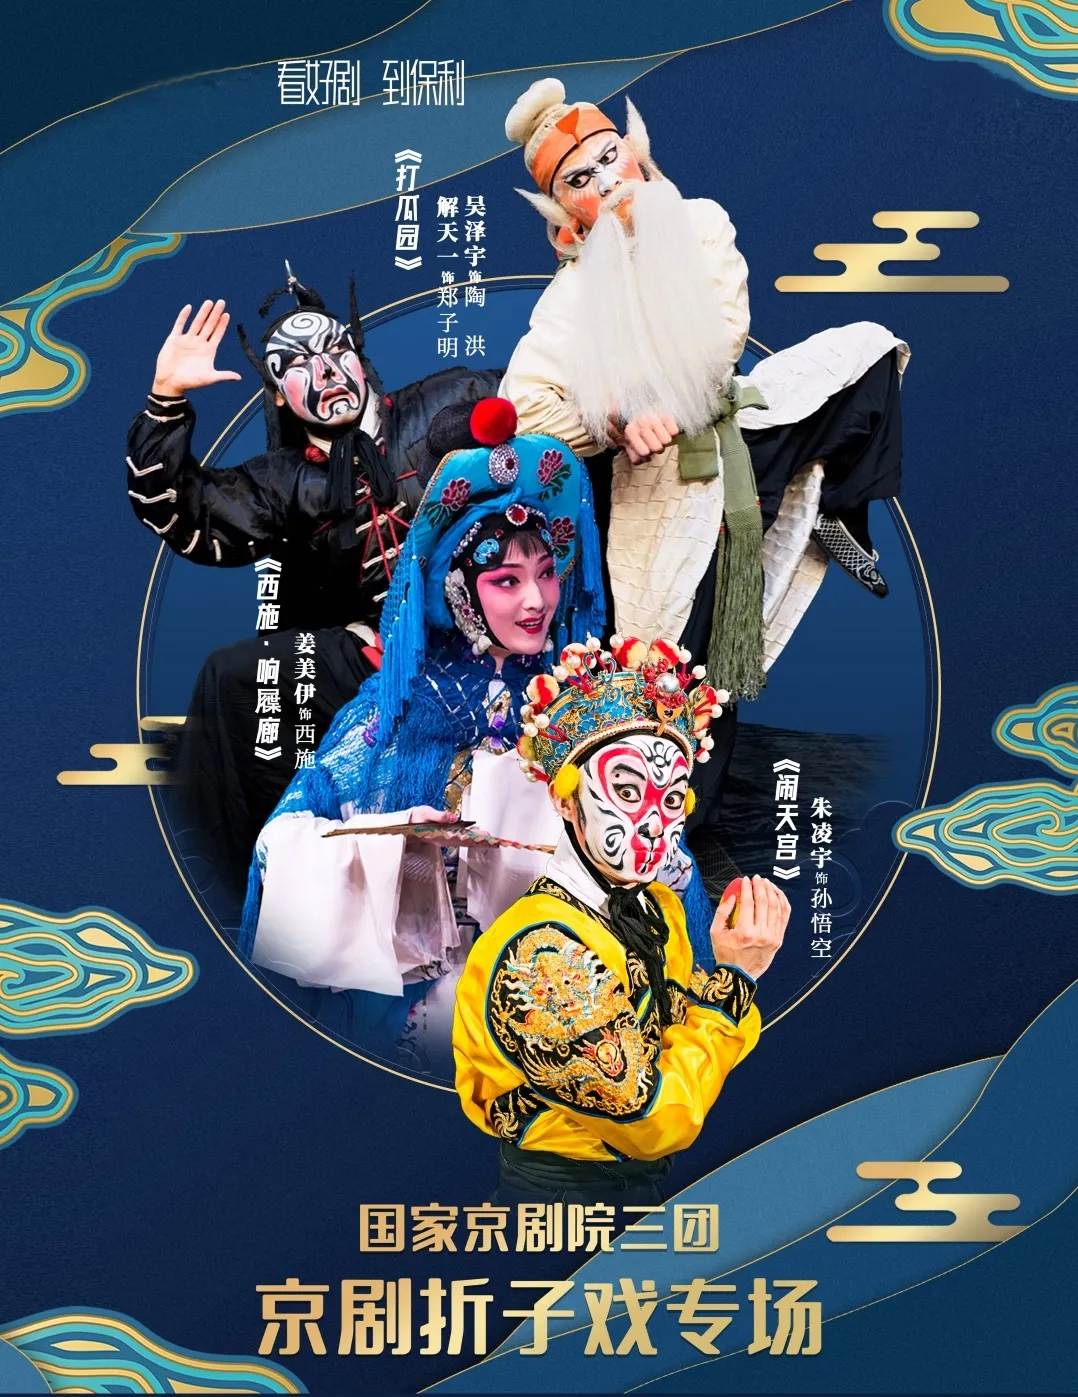 2021国家京剧院折子戏专场—《打瓜园》、《西施》、《闹天宫》-南京站